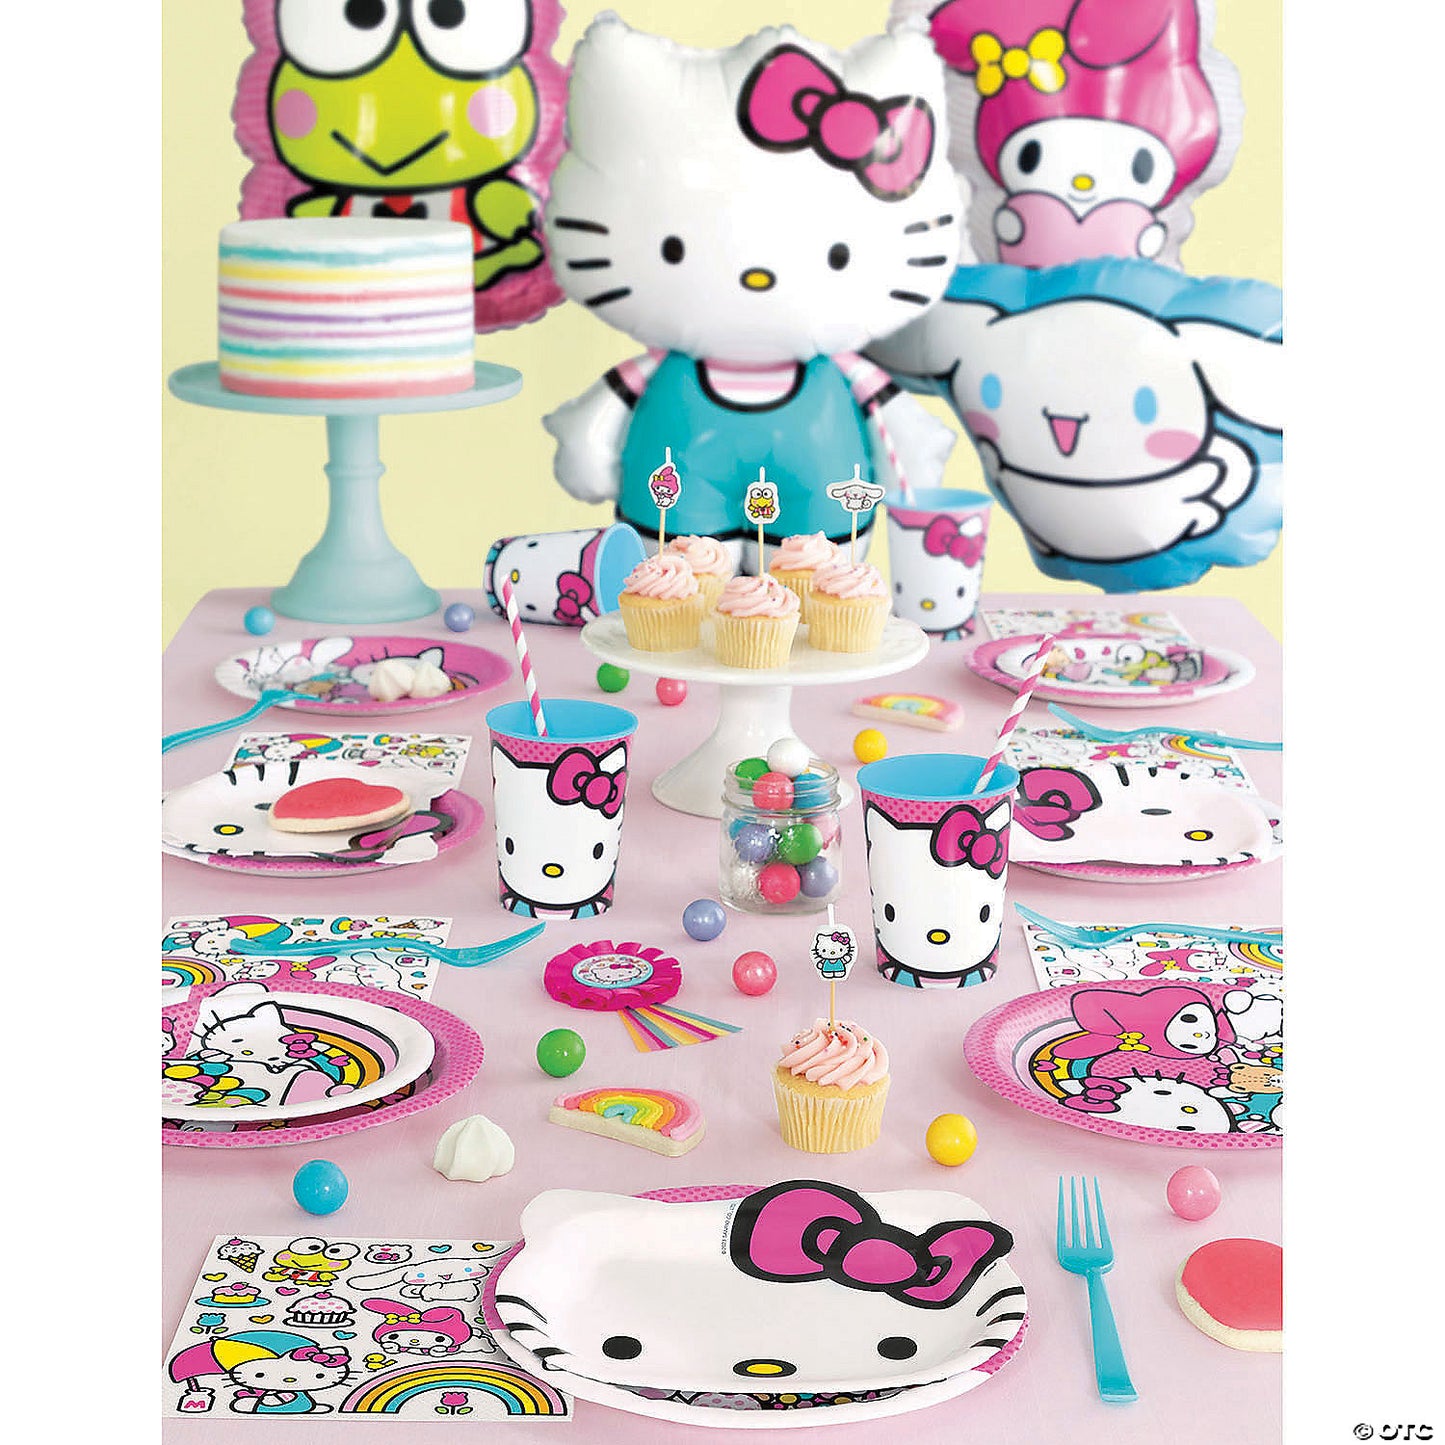 16" Hello Kitty Keroppi  Balloon